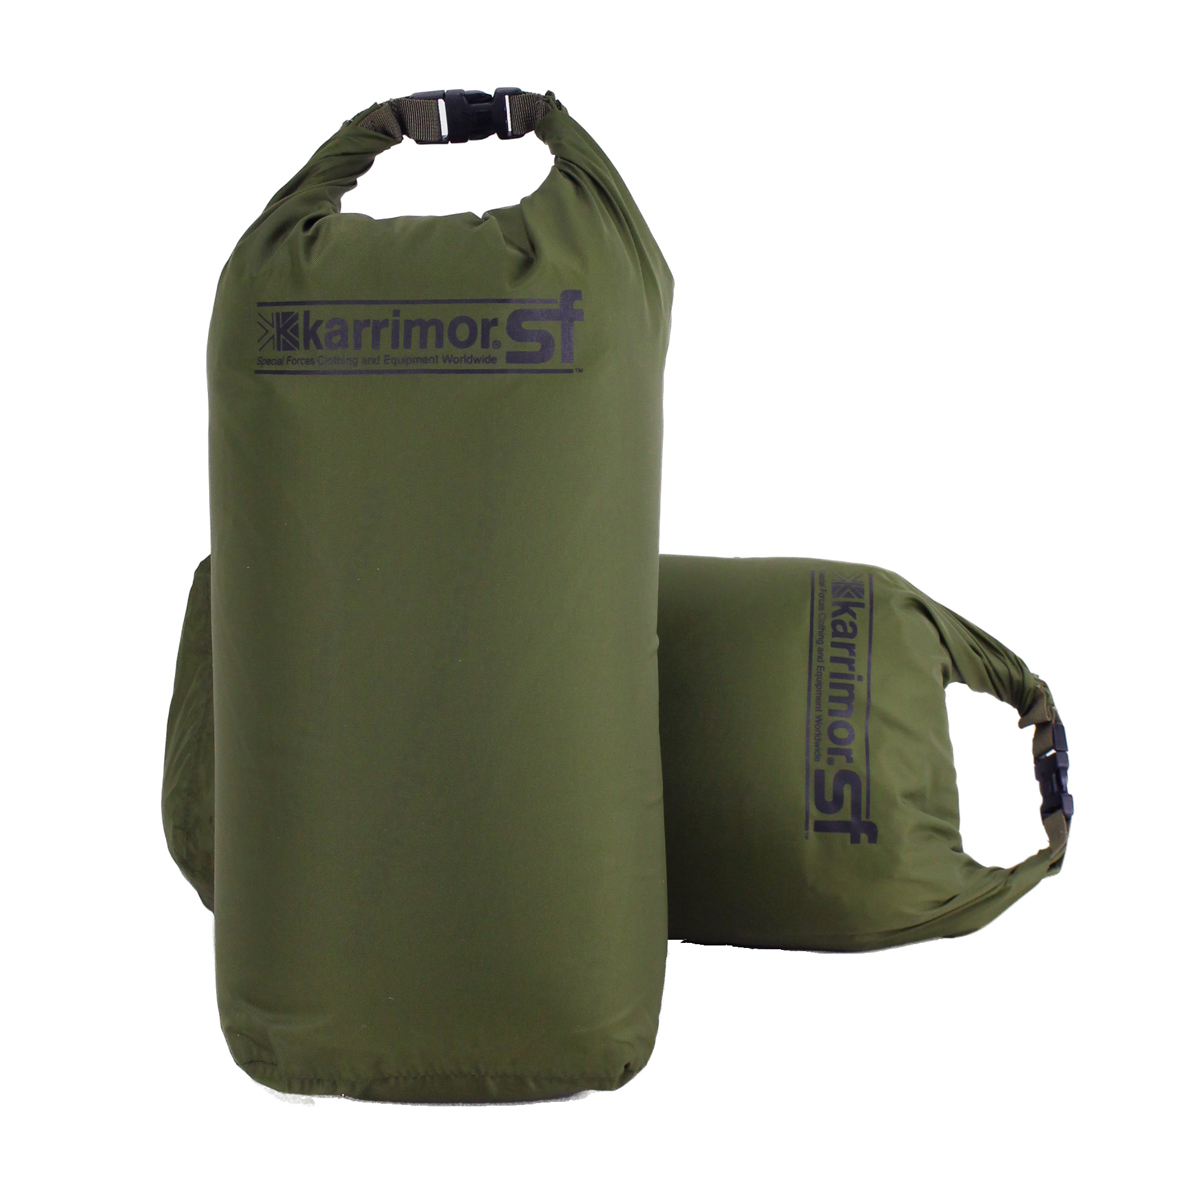 Karrimor SF vojaška nepremočljiva vreča 12 litrov (par 2 kosov) je odlična izbira za uporabo pri pritrjevanju stranskih torb na nahrbtnike. Vodotesna in vzdržljiva dry bag vreča, združujejo stil in funkcionalnost. Kupite zdaj in ohranite svojo opremo suho in varno